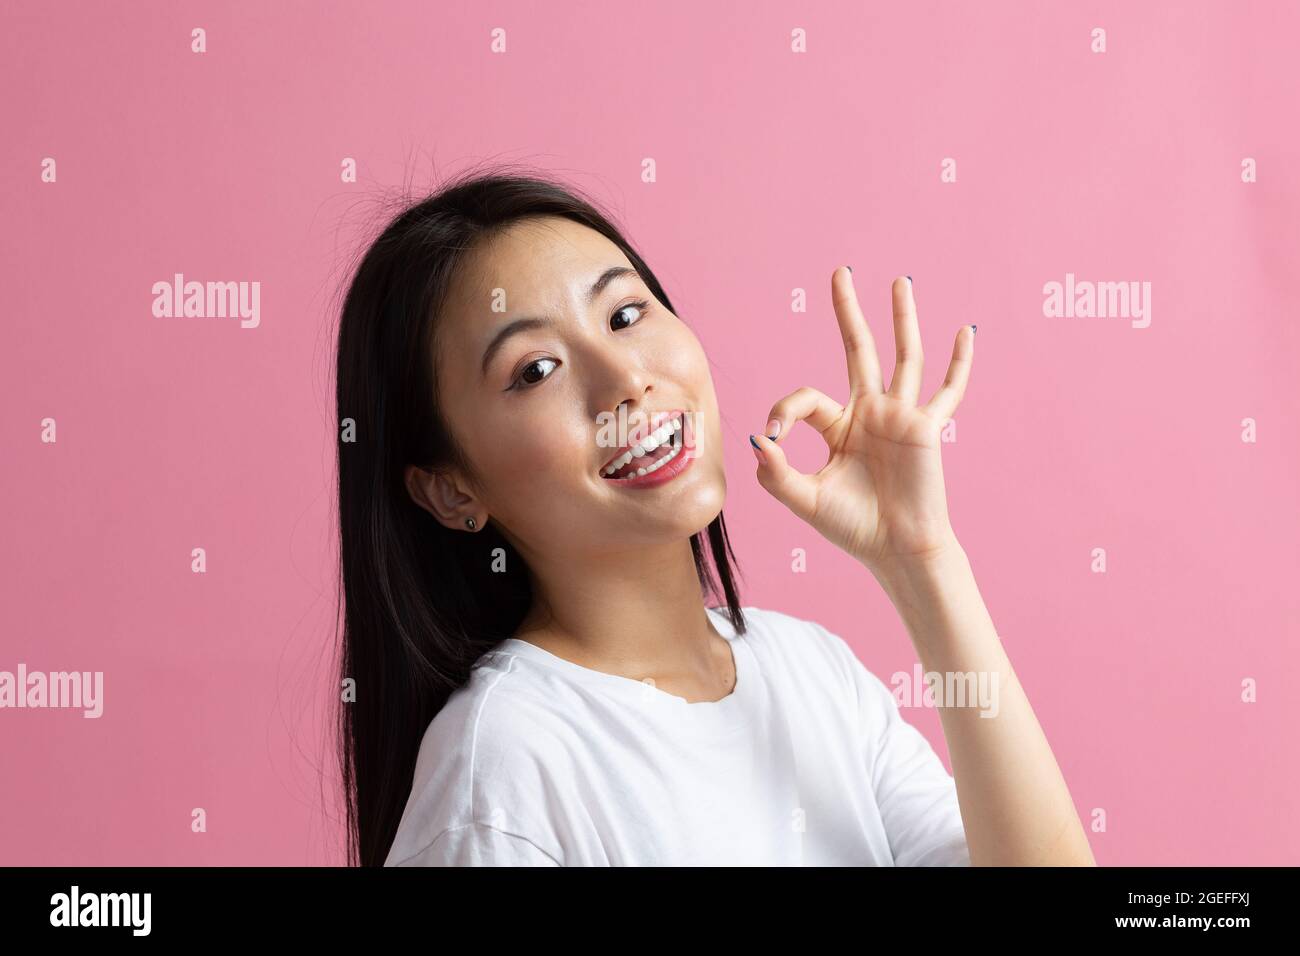 Fille asiatique souriante montrant un geste OK. Belle jeune femme aux cheveux foncés portant un t-shirt blanc. Femelle regardant la caméra isolée sur fond rose. Prise de vue en studio Banque D'Images